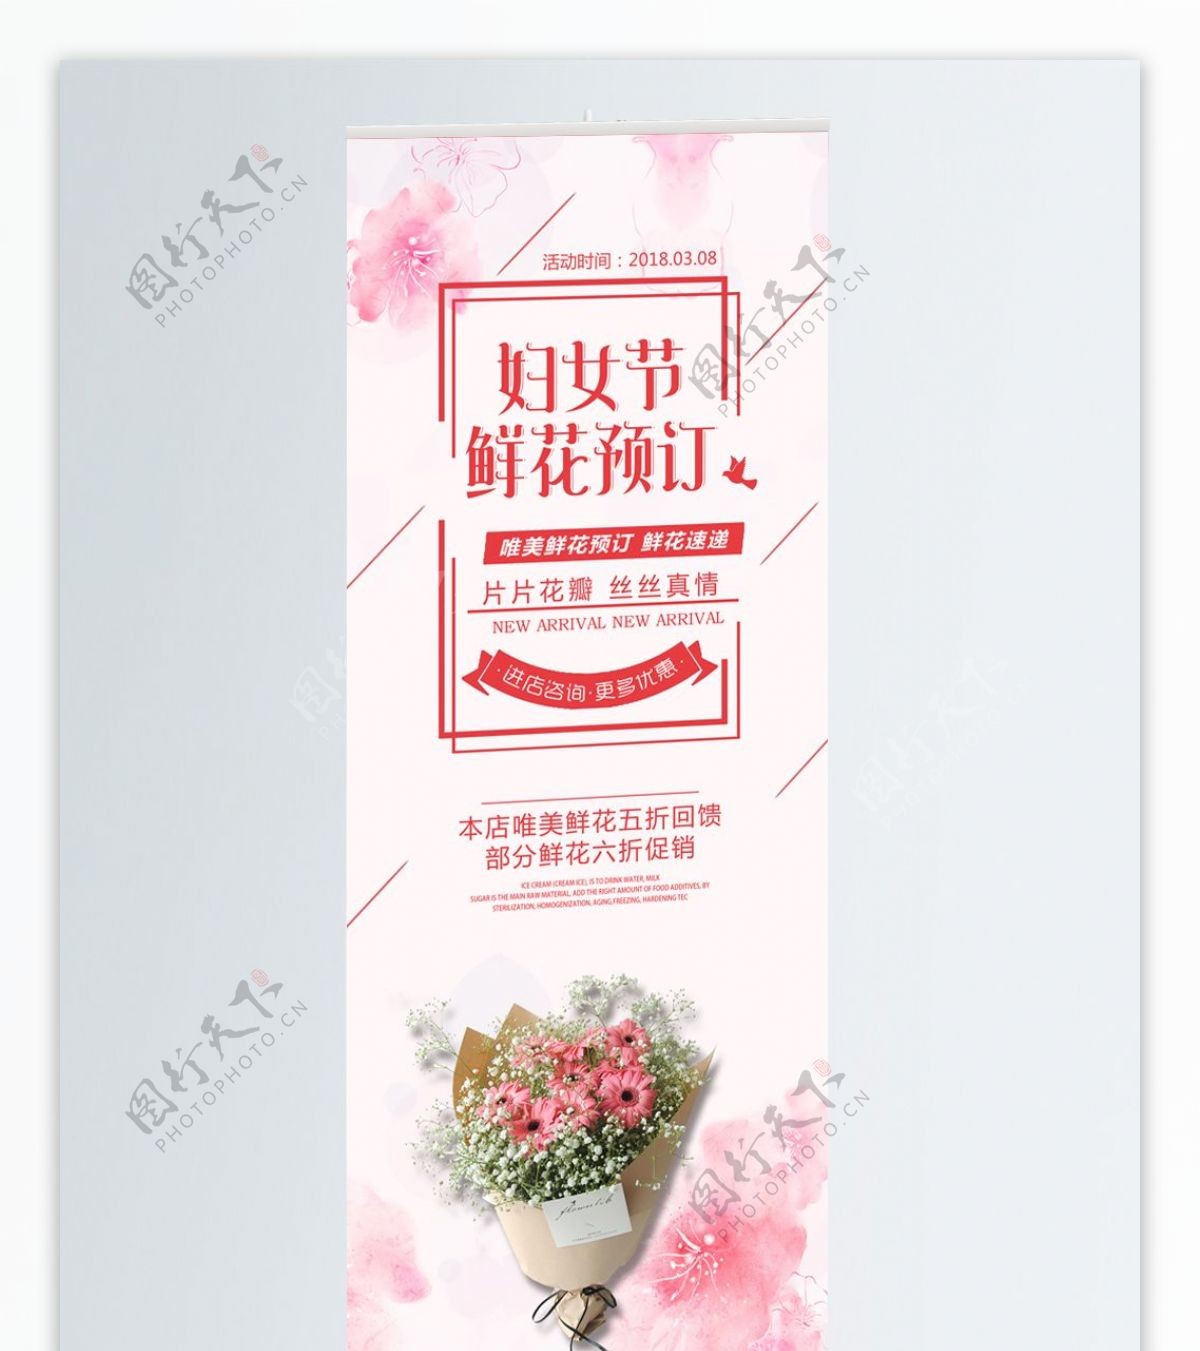 粉色唯美3.8妇女节鲜花促销广告